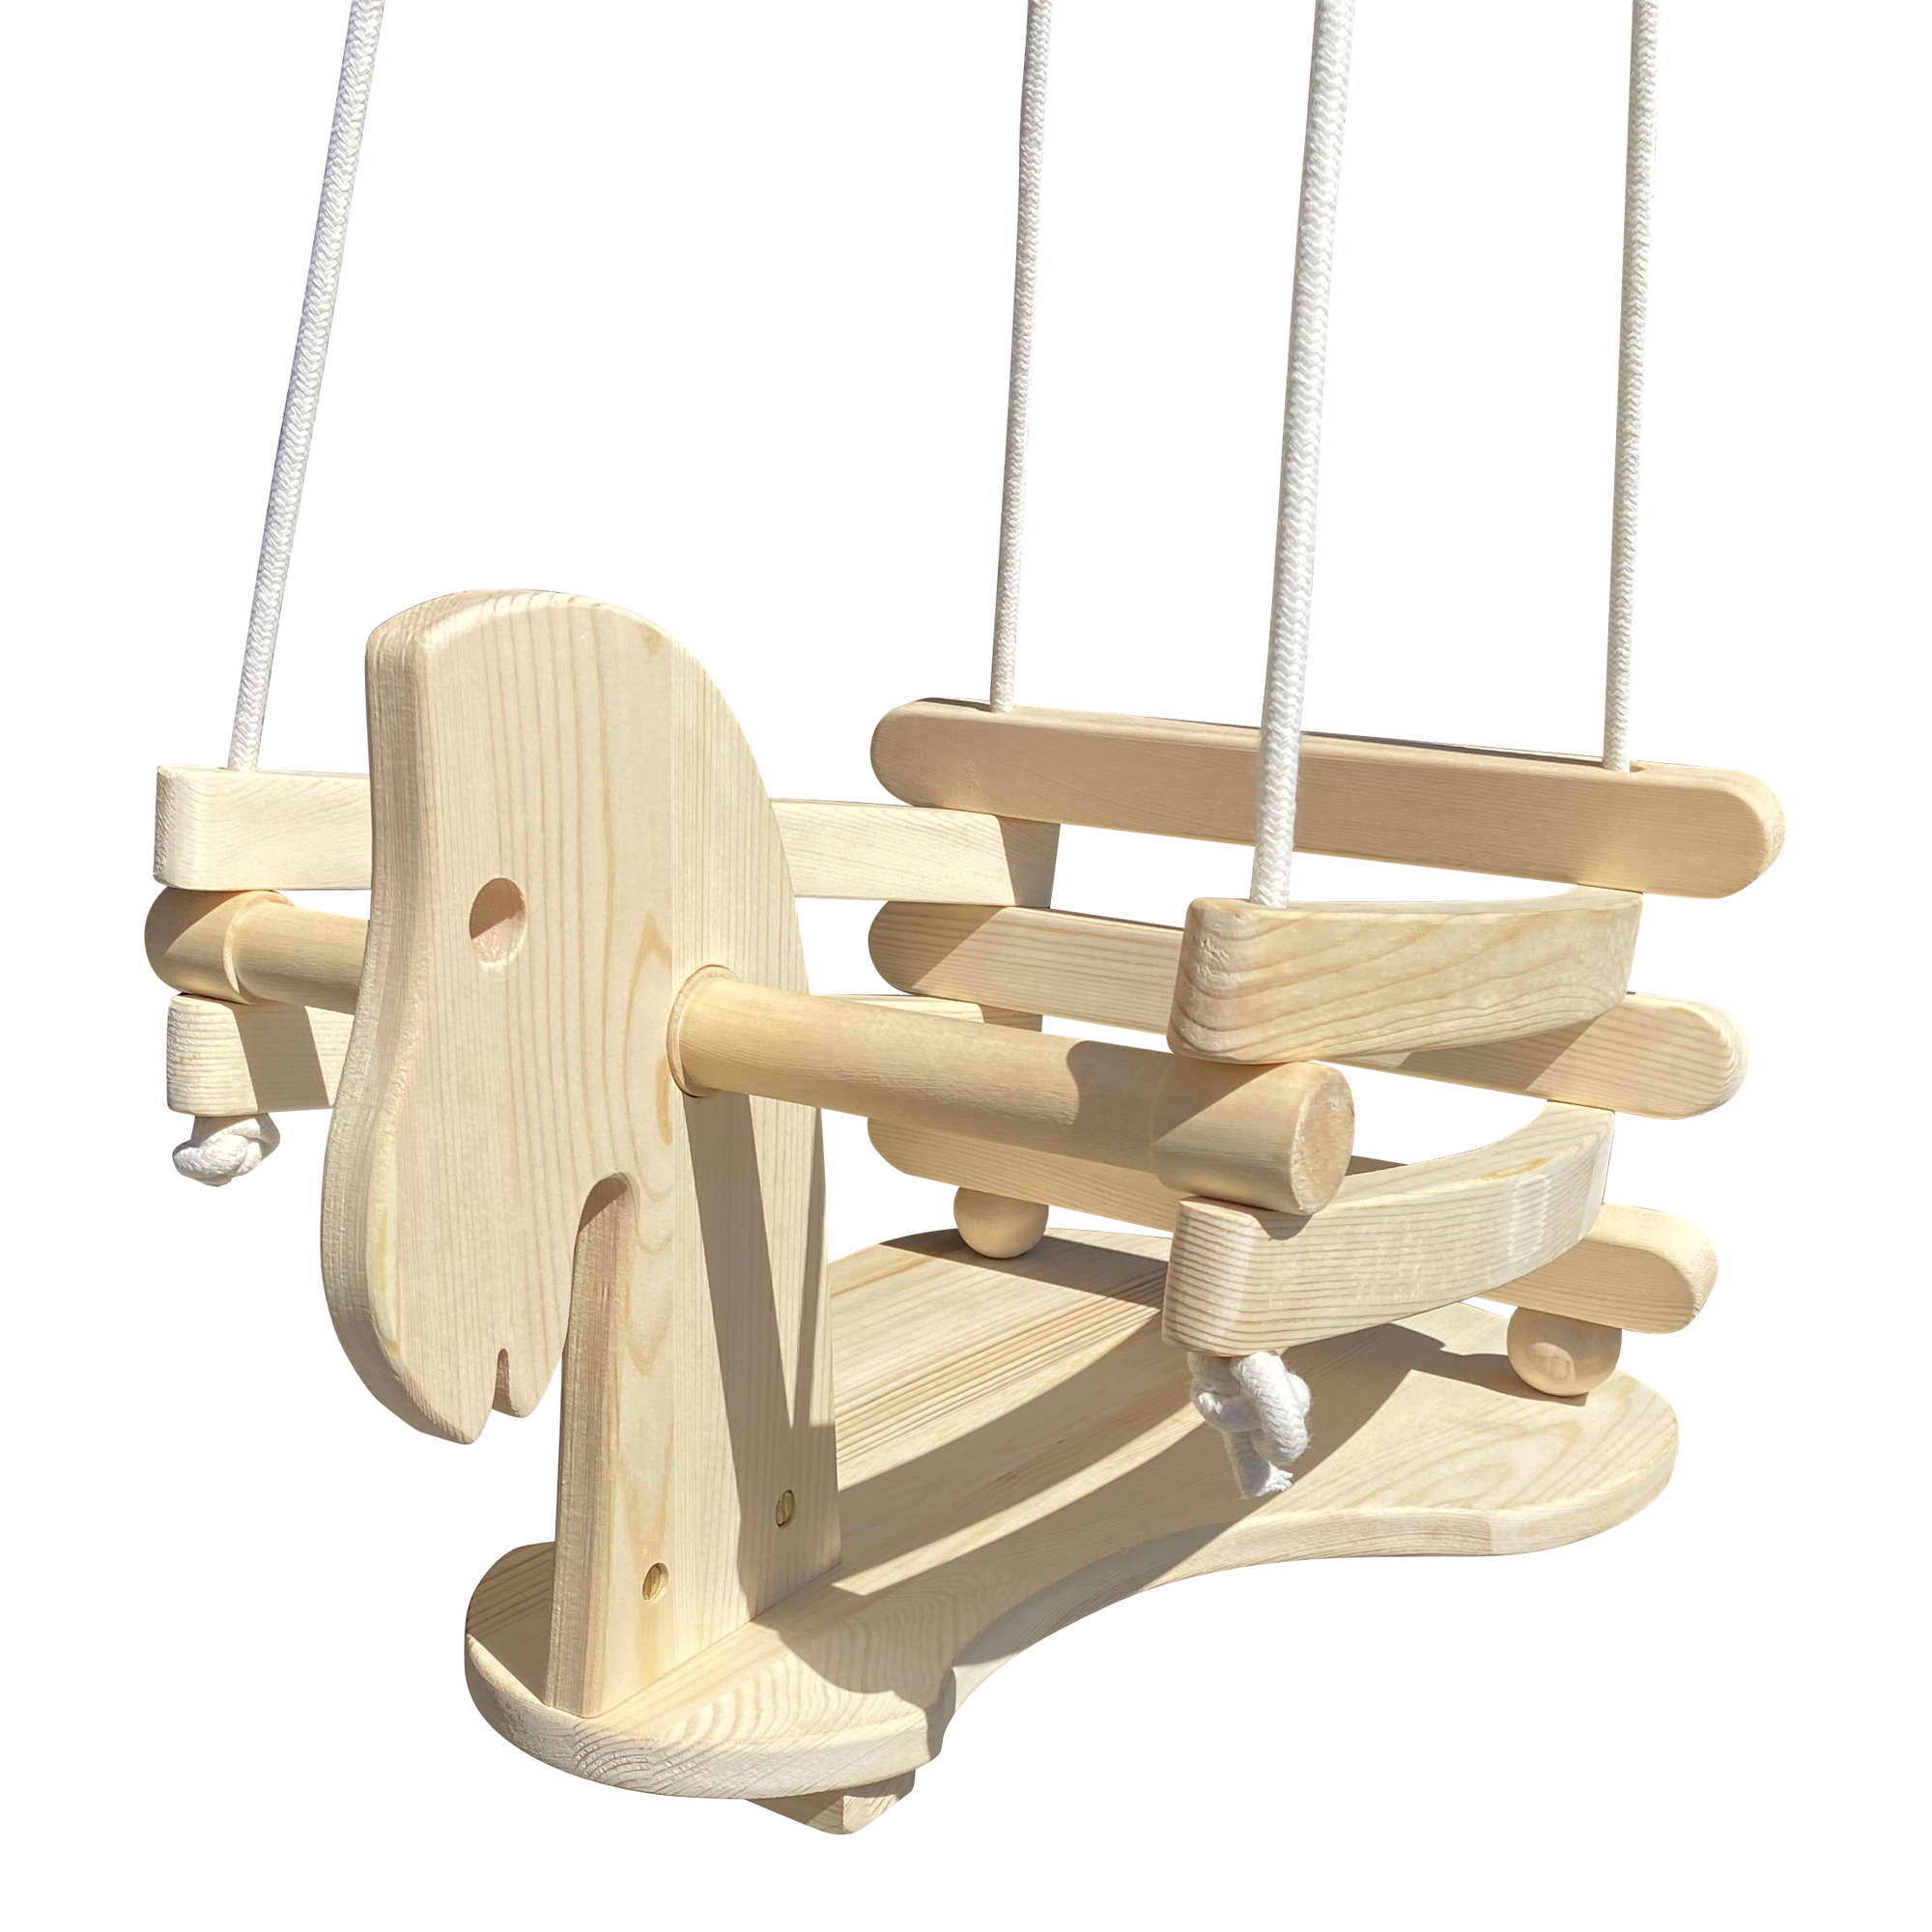 Babyschaukel Kinderschaukel Gitterschaukel Retro Holz Schaukel zum Aufhängen * 